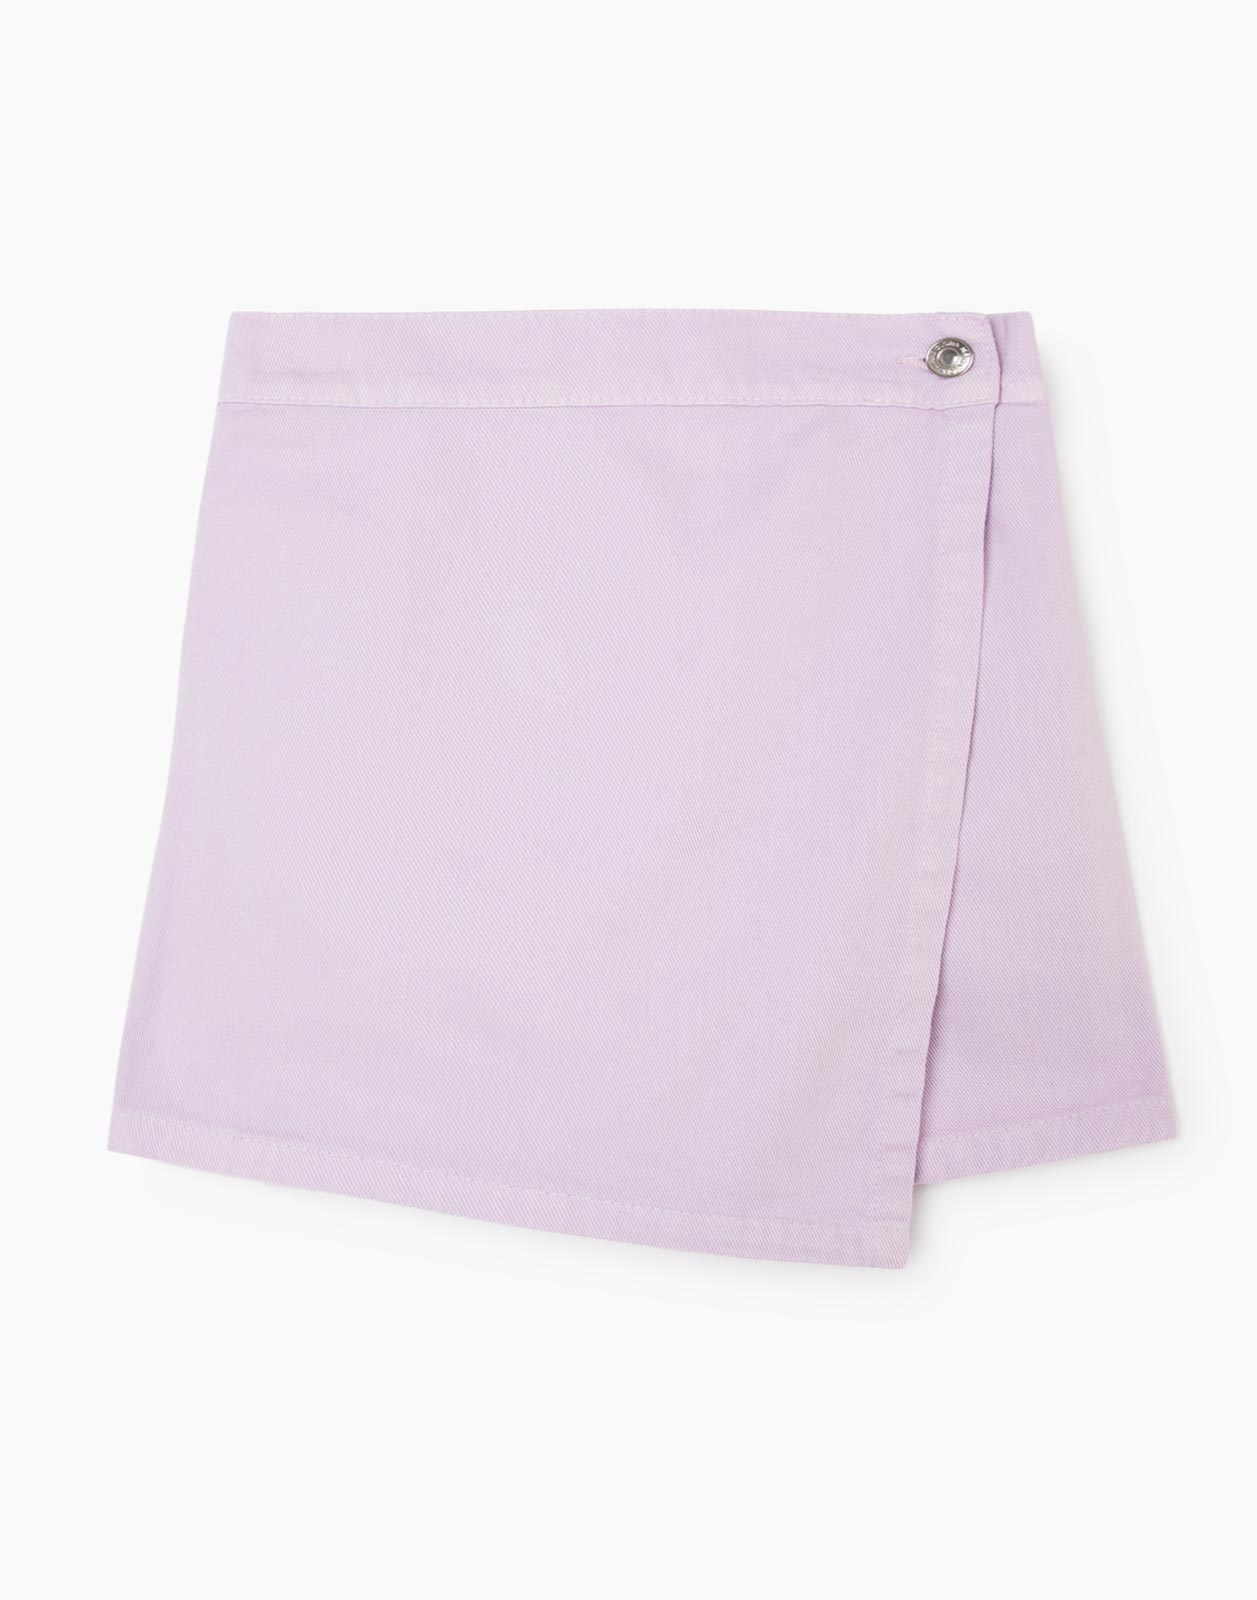 Сиреневая джинсовая юбка-шорты для девочки р.122-128